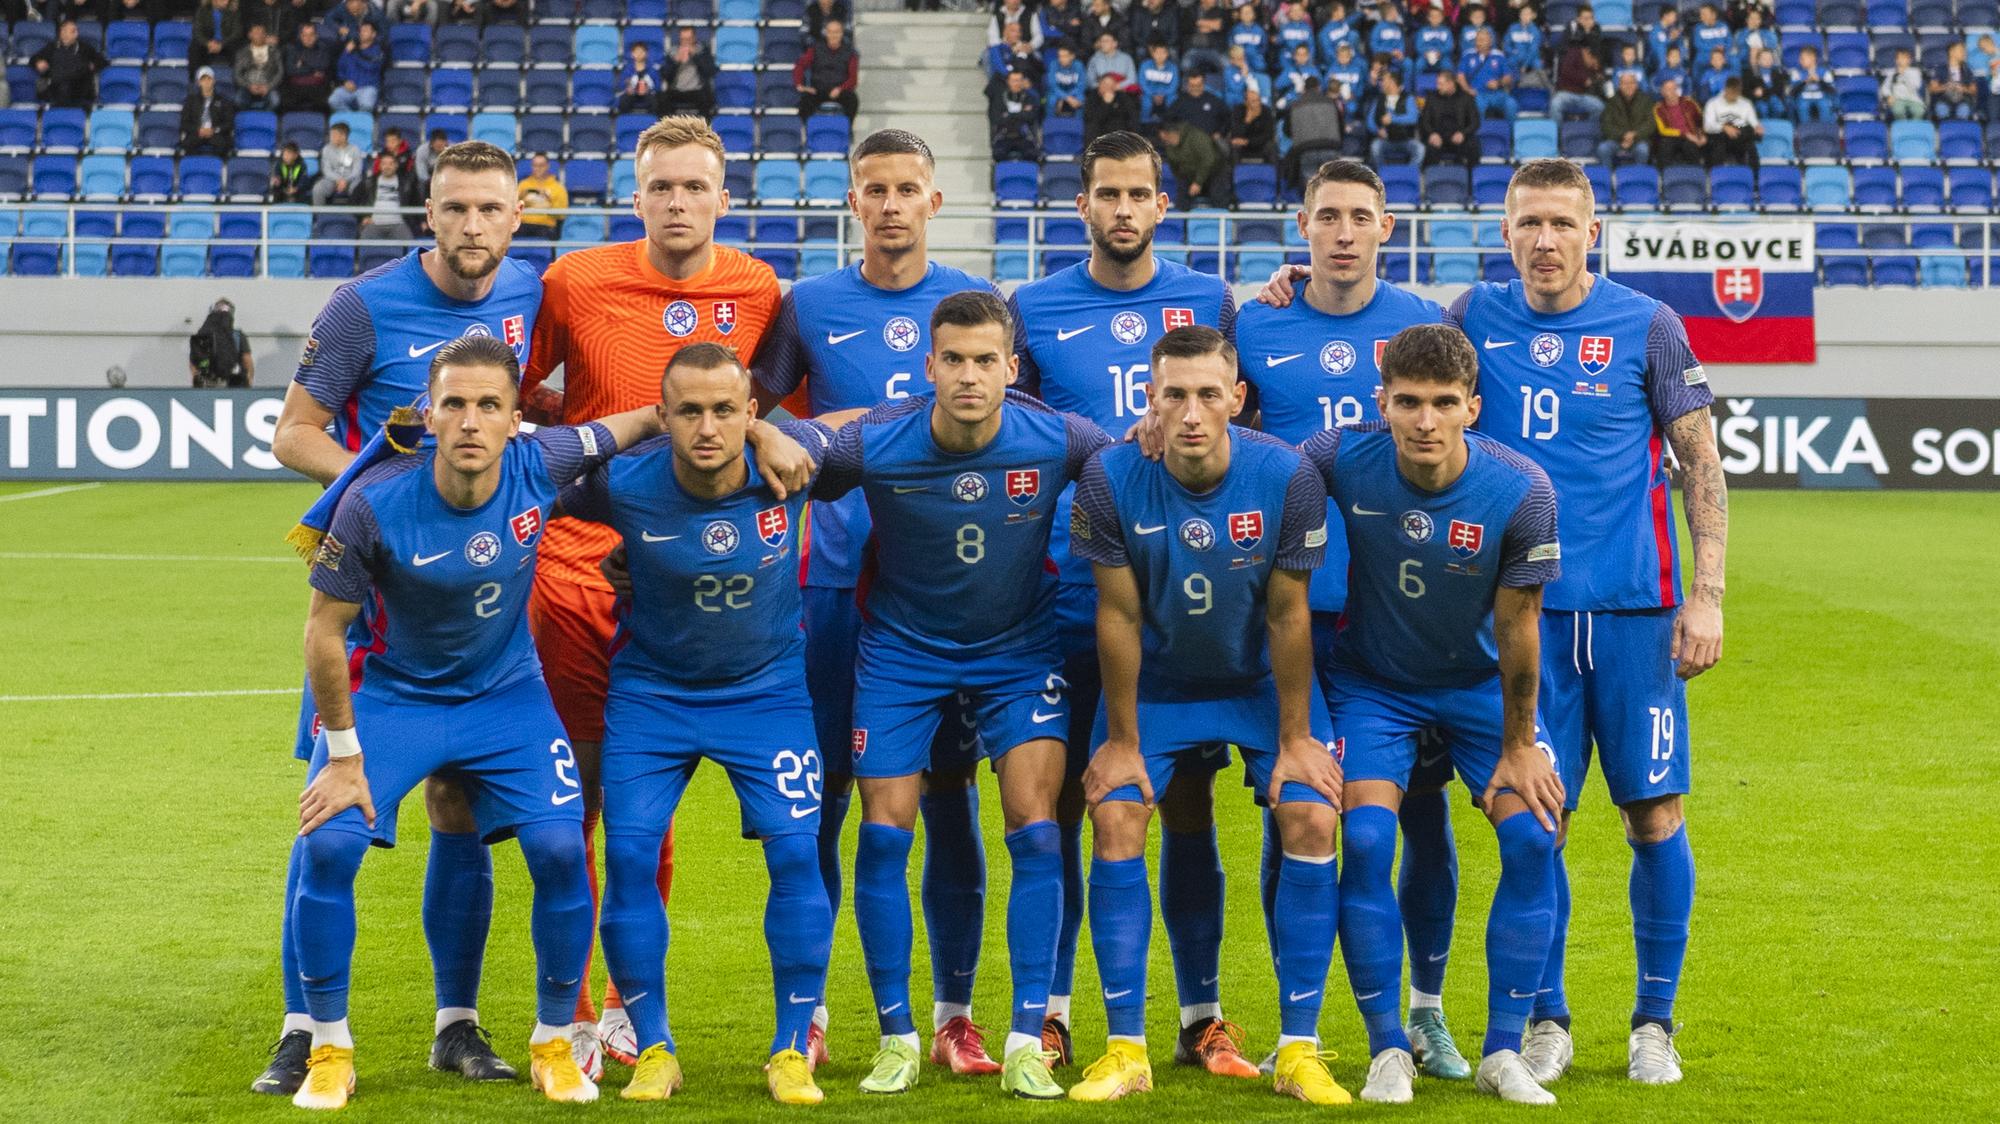 Futbal : Slovensko - Čierna Hora / zostavy | Šport.sk